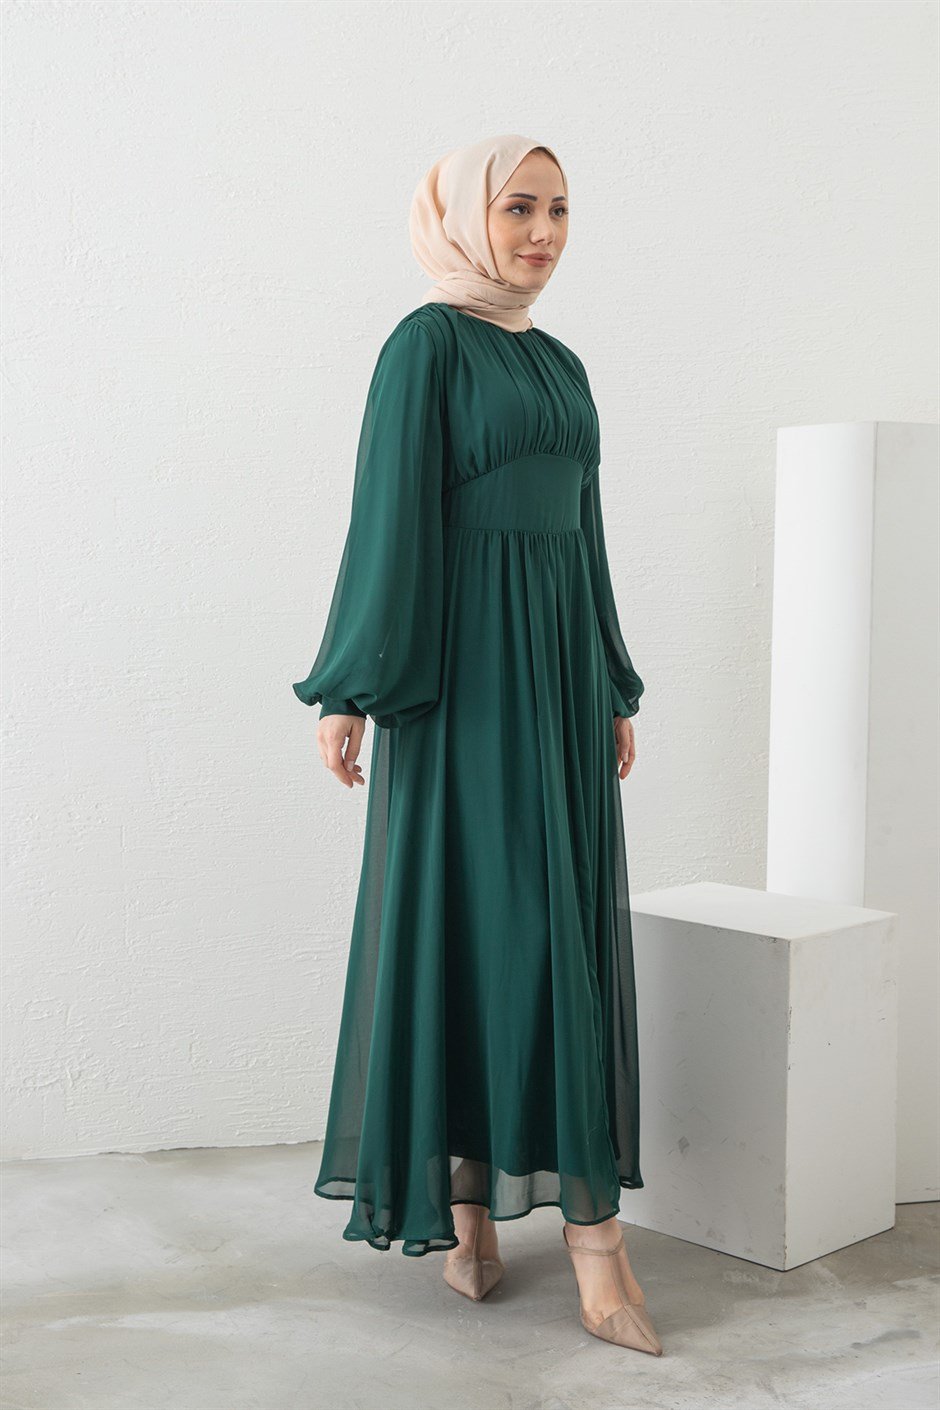 Pileli Şifon Elbise Zümrüt Yeşili - Moda Ala